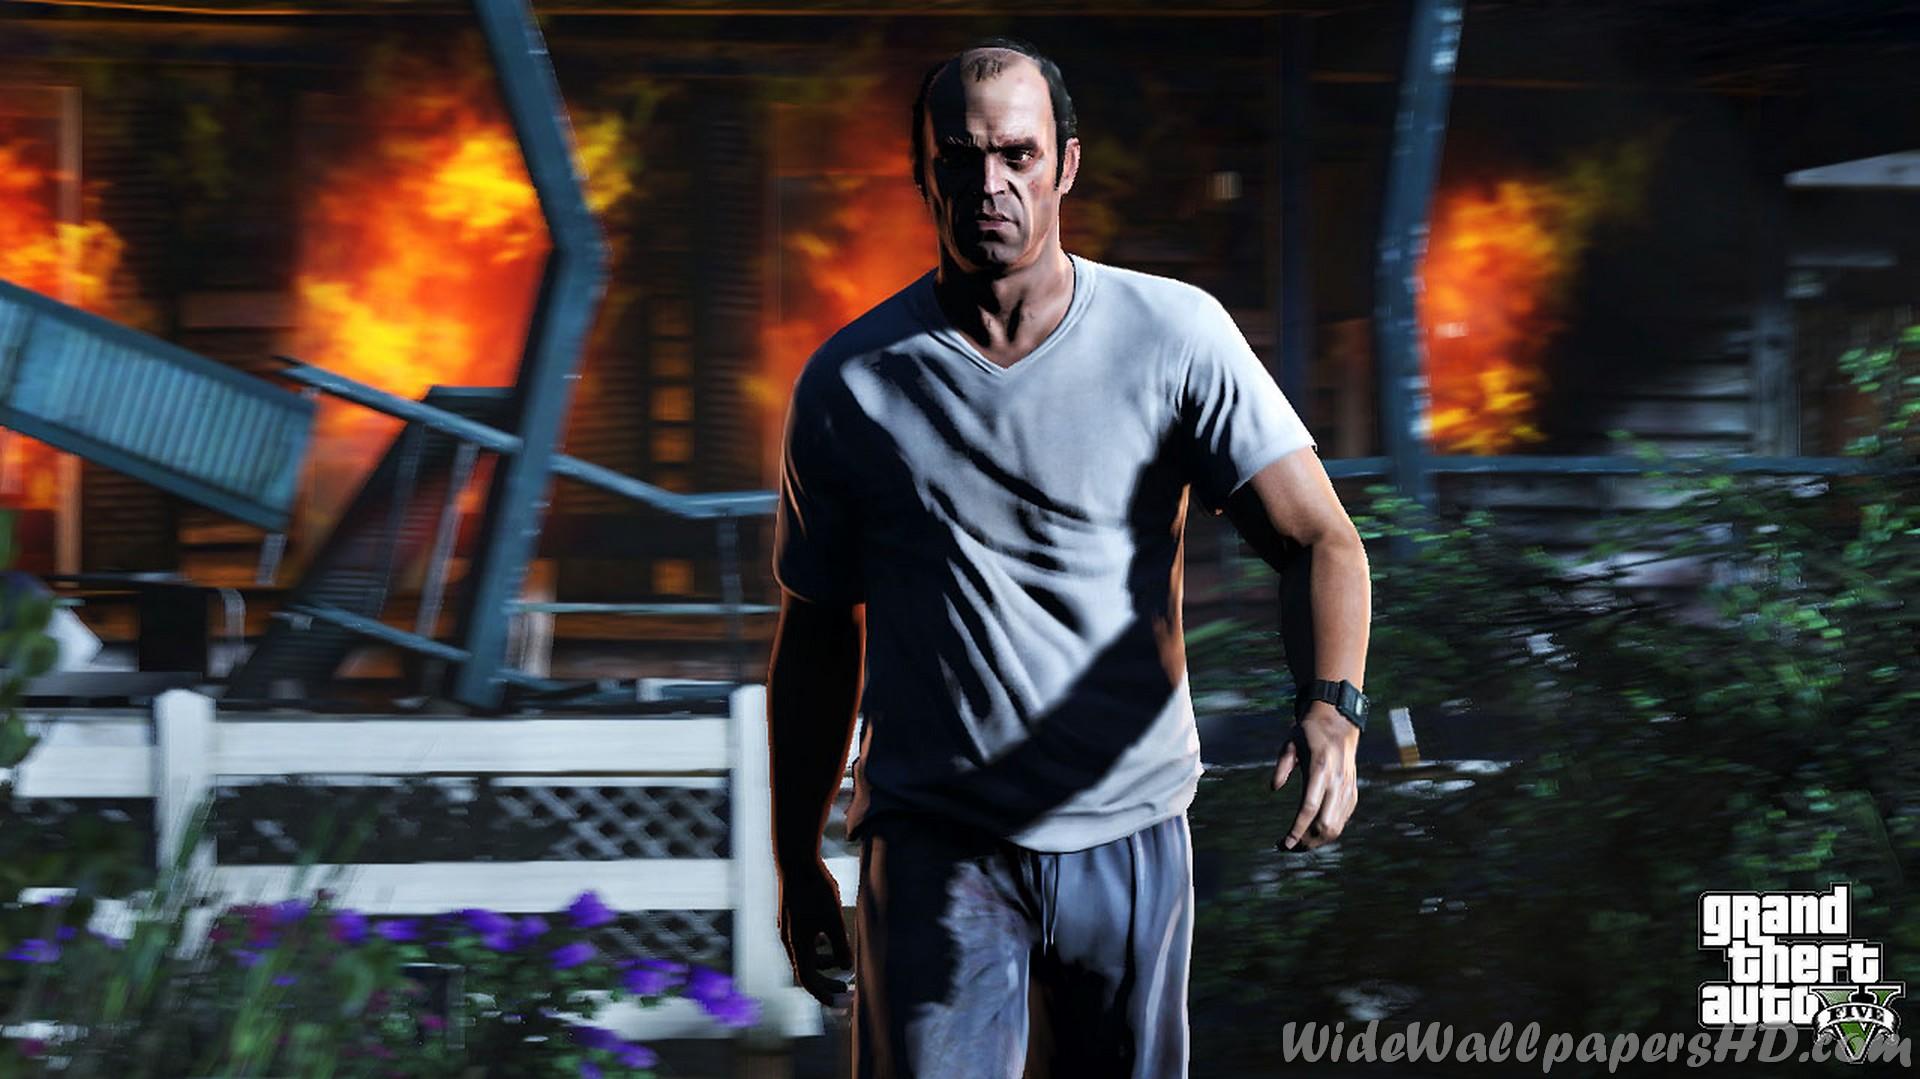 Trevor Explode Gta5 Grand Theft Auto V Wide